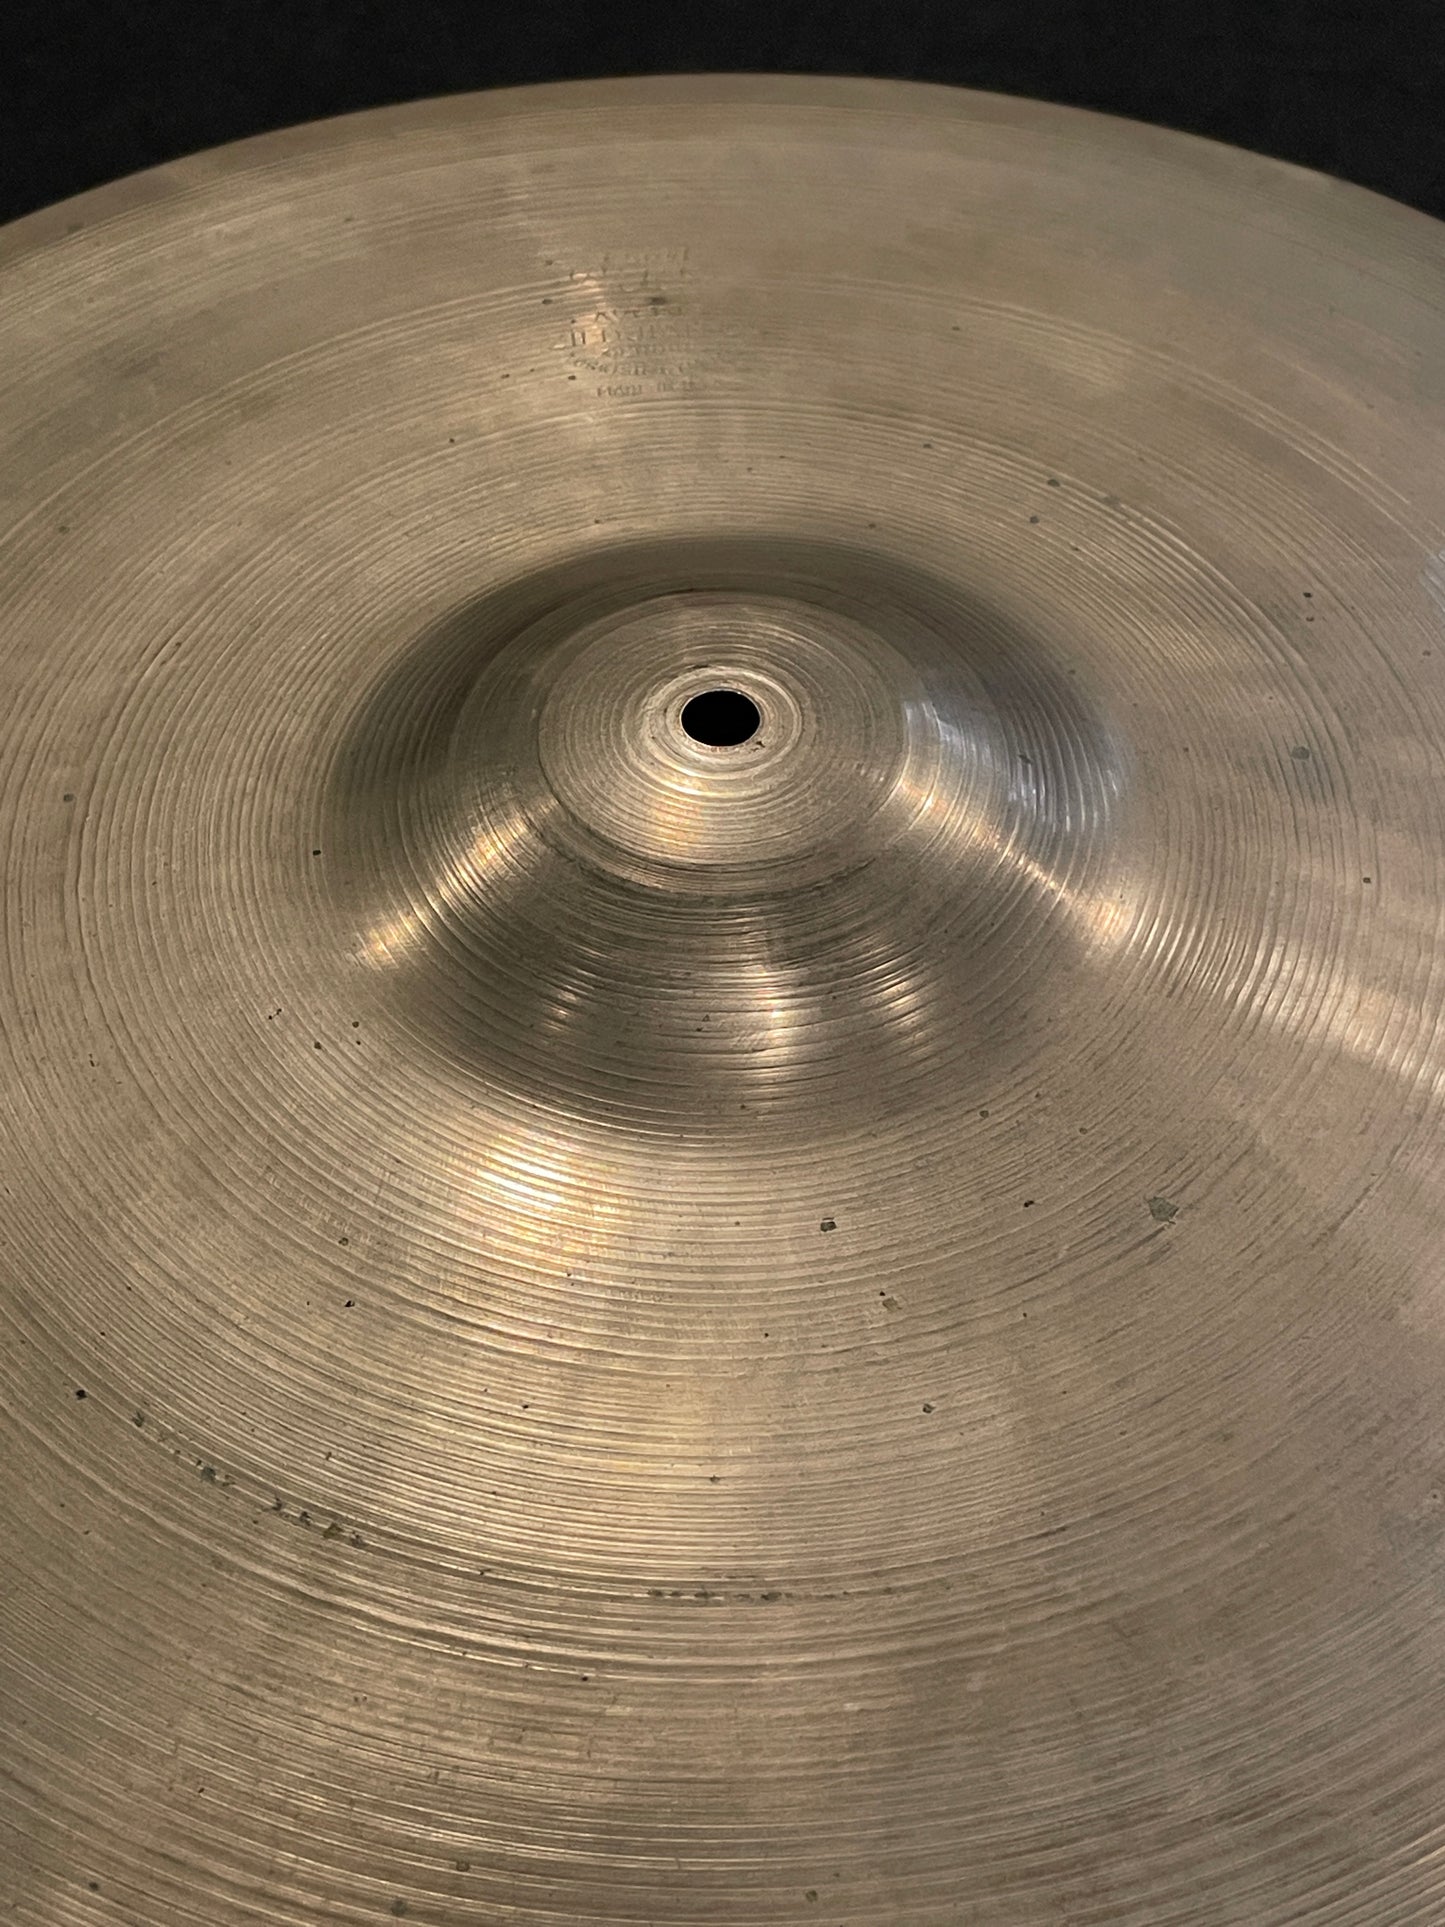 18" Zildjian A 1954-56 Crash Ride Cymbal 1706g #602